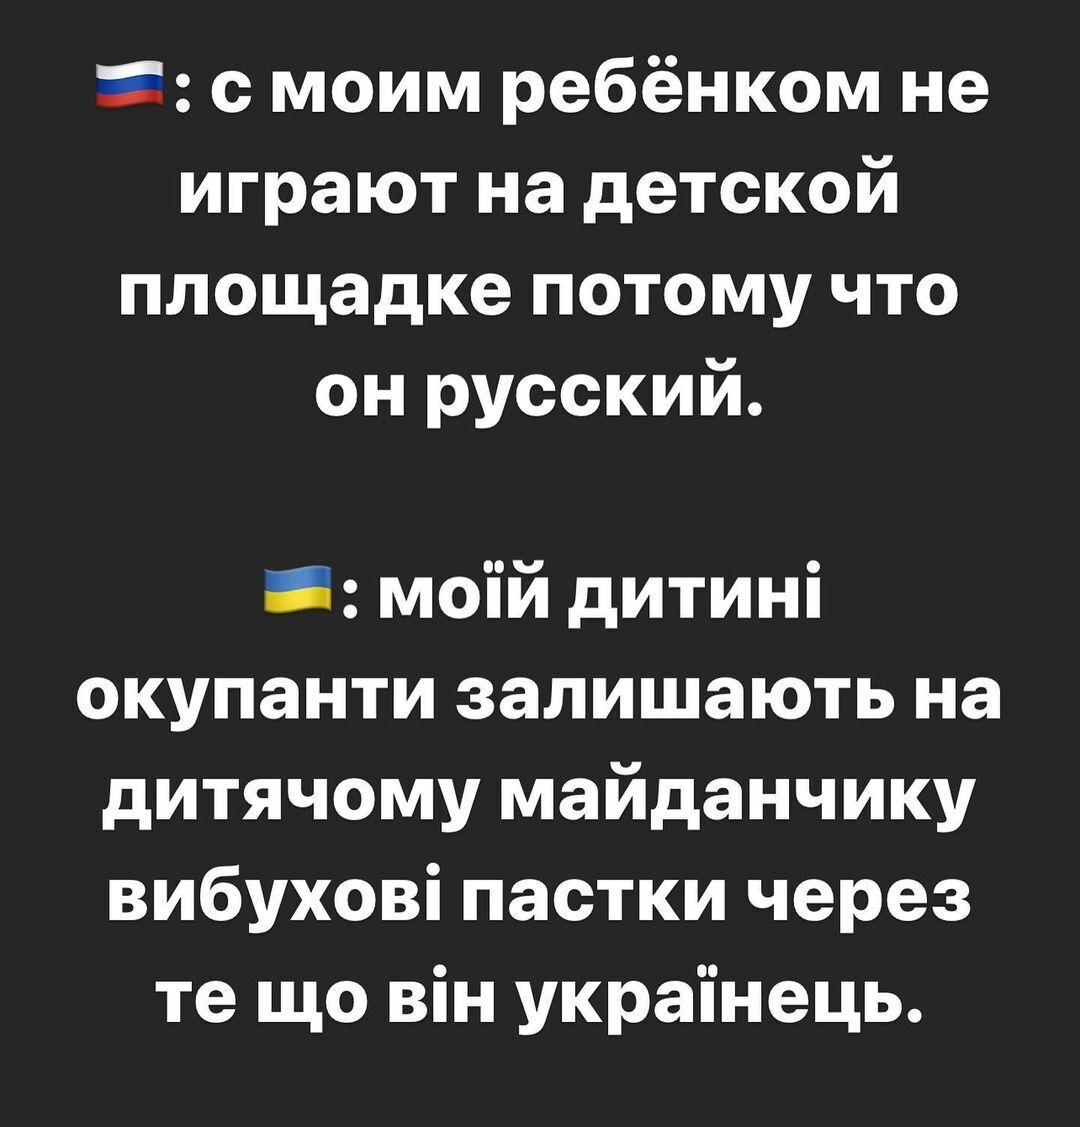 Украинка сравнила фразы граждан России и Украины